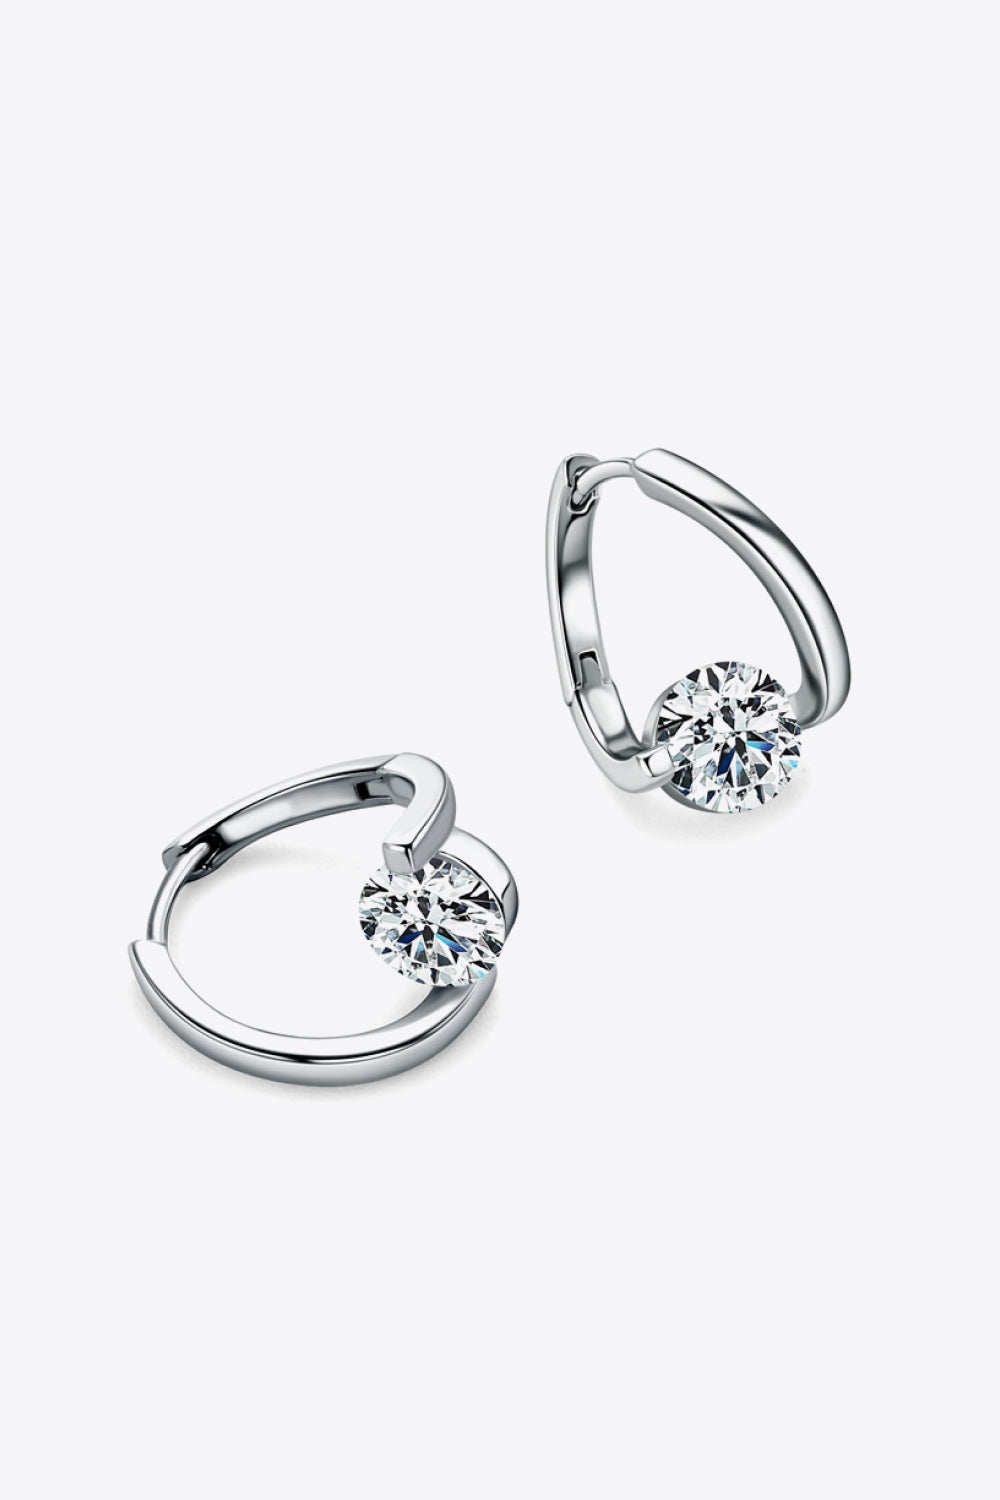 2 Carat Moissanite 925 Sterling Silver Heart Earrings - Earrings - FITGGINS